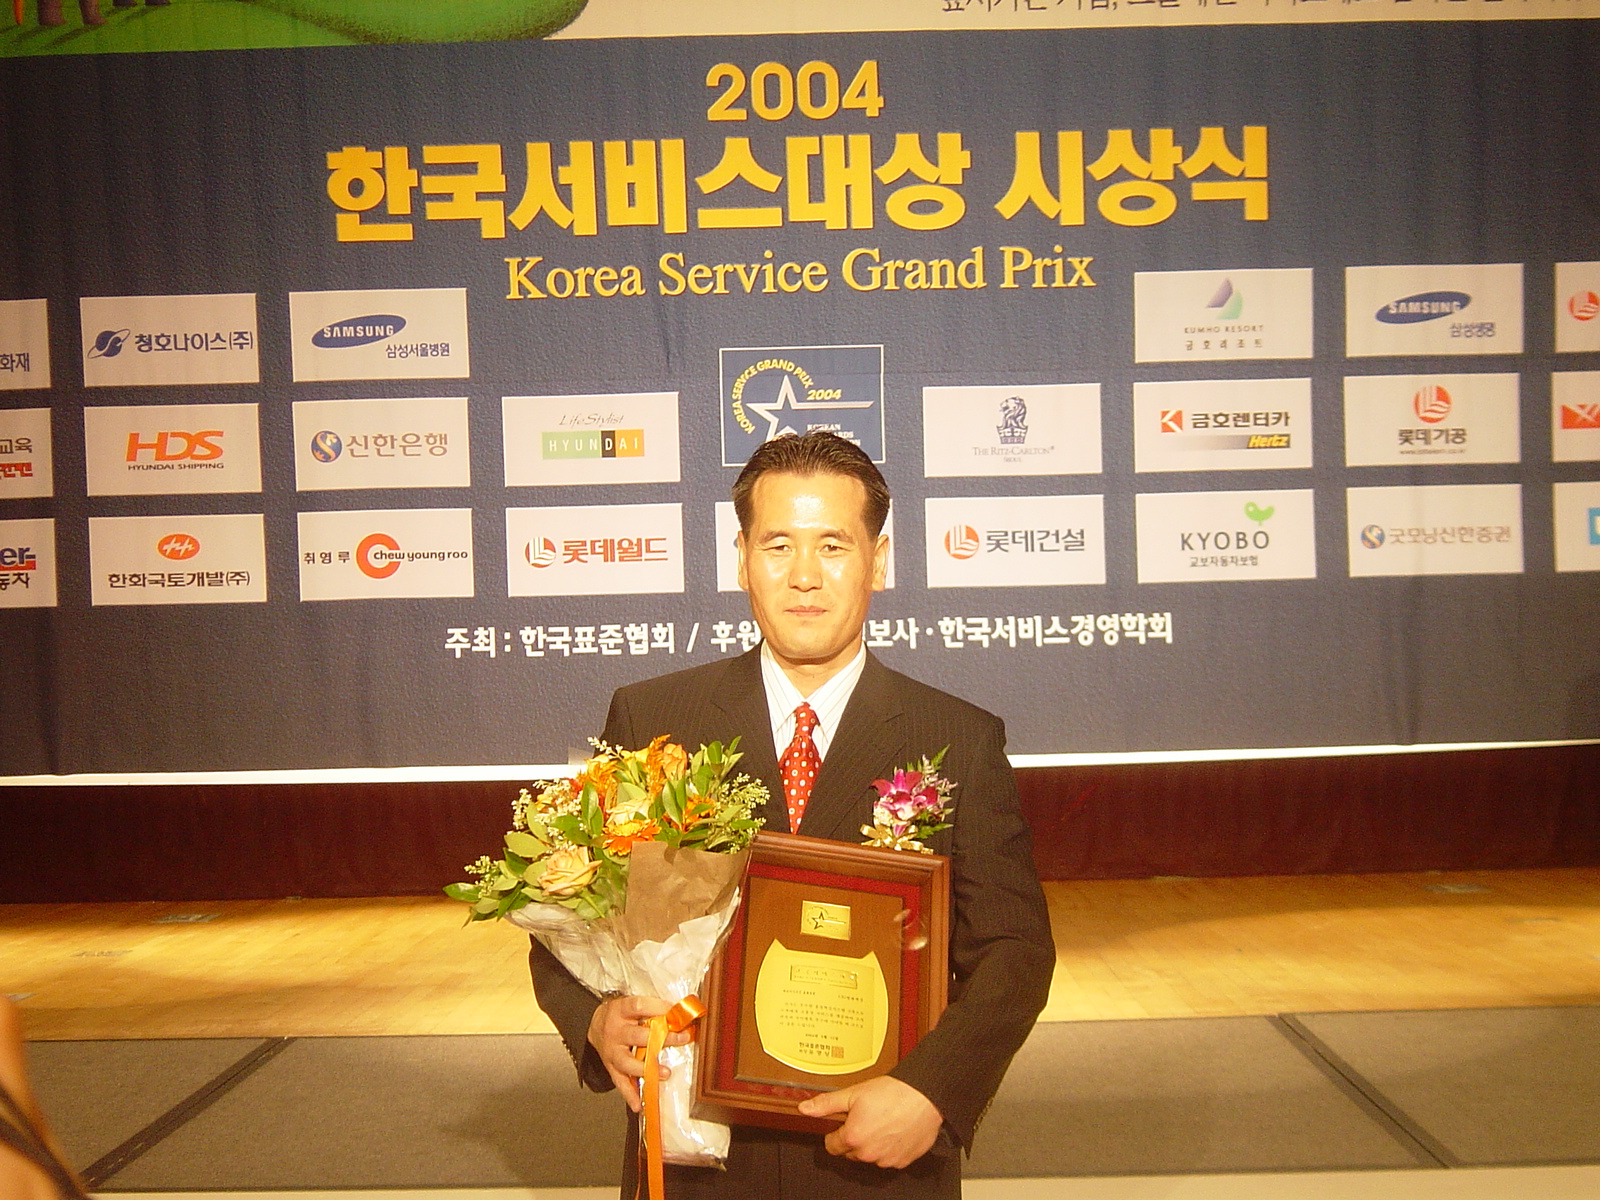 산업자원부 주최 한국서비스대상 3년 연속 수상